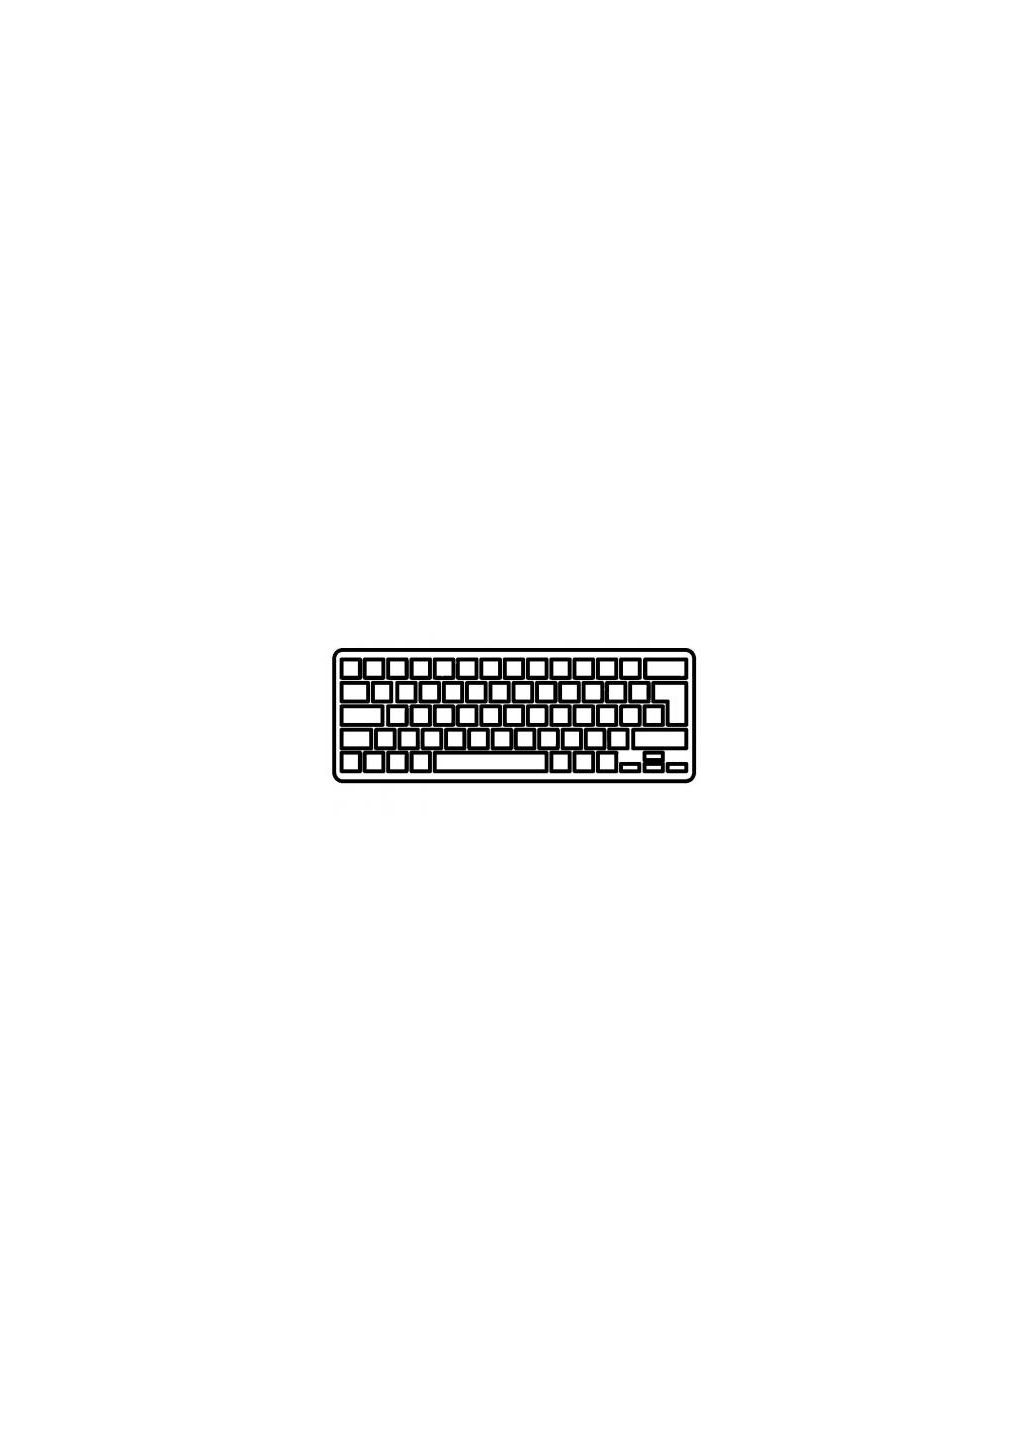 Клавиатура ноутбука Envy 173000/17t-3200 Series черная без рамки с подсветкой U (A43779) HP envy 17-3000/17t-3200 series черная без рамки с по (276707711)